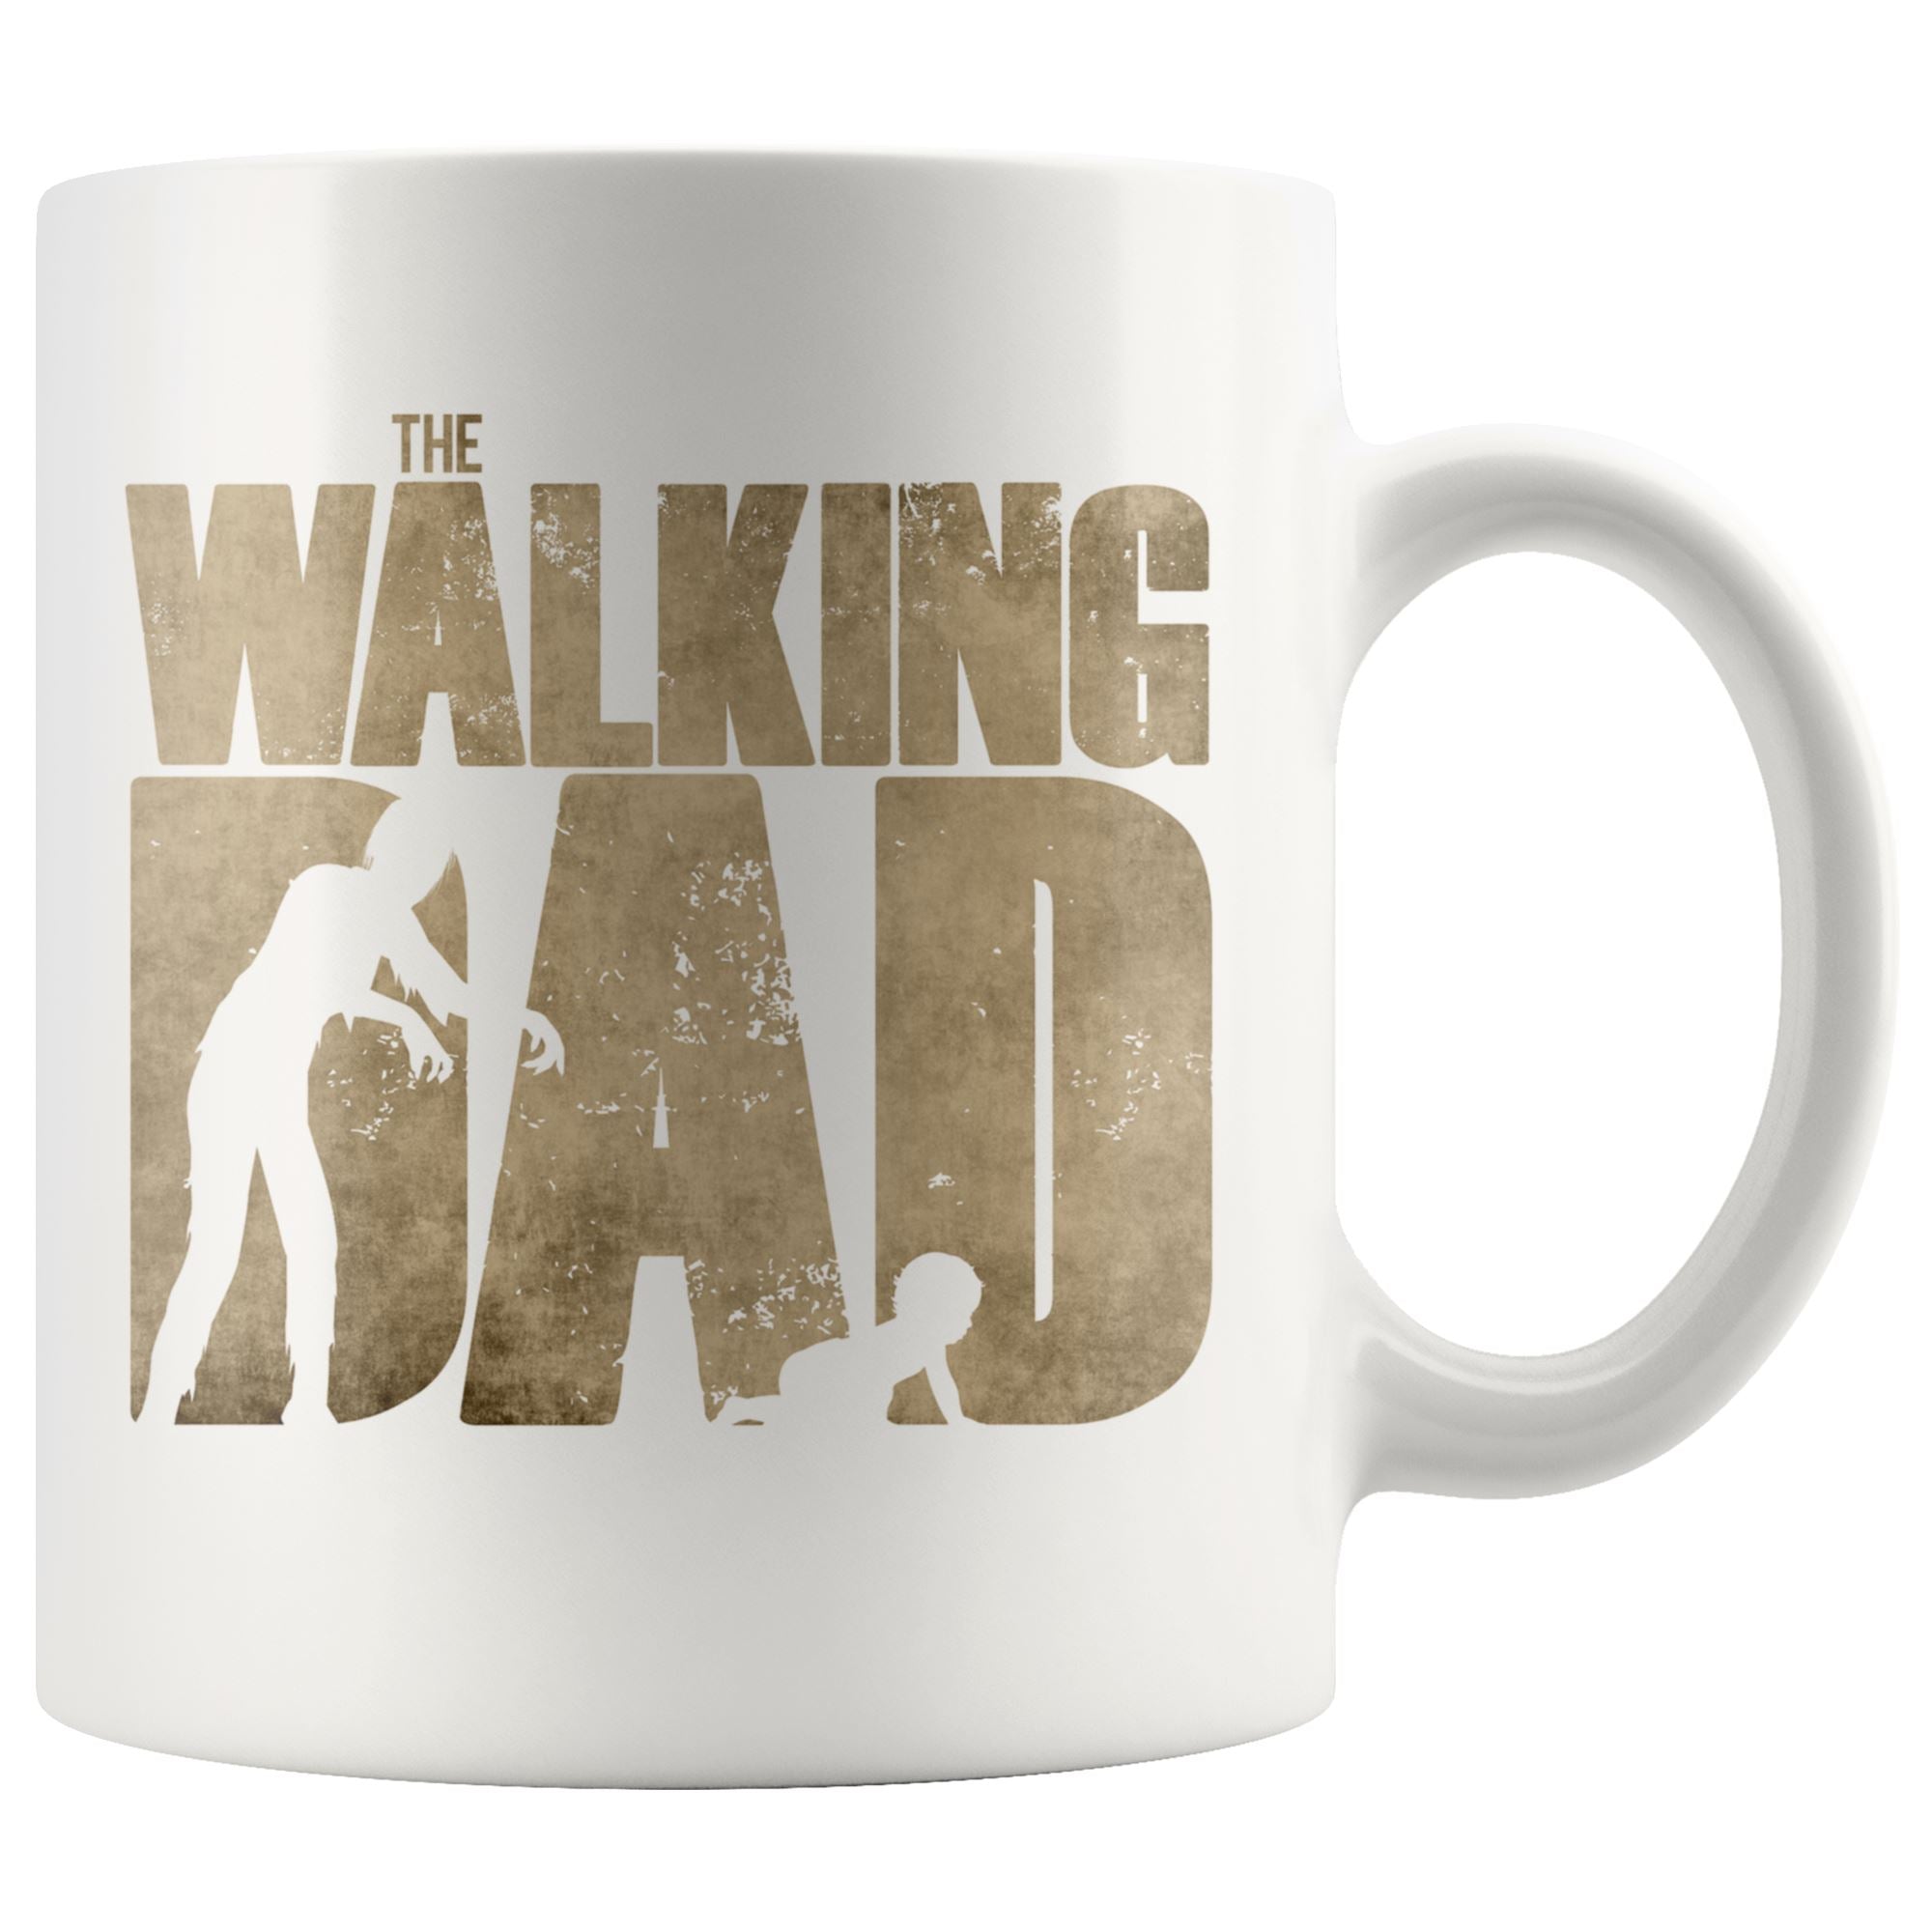 The Walking Dad mug Drinkware teelaunch 11oz Mug 